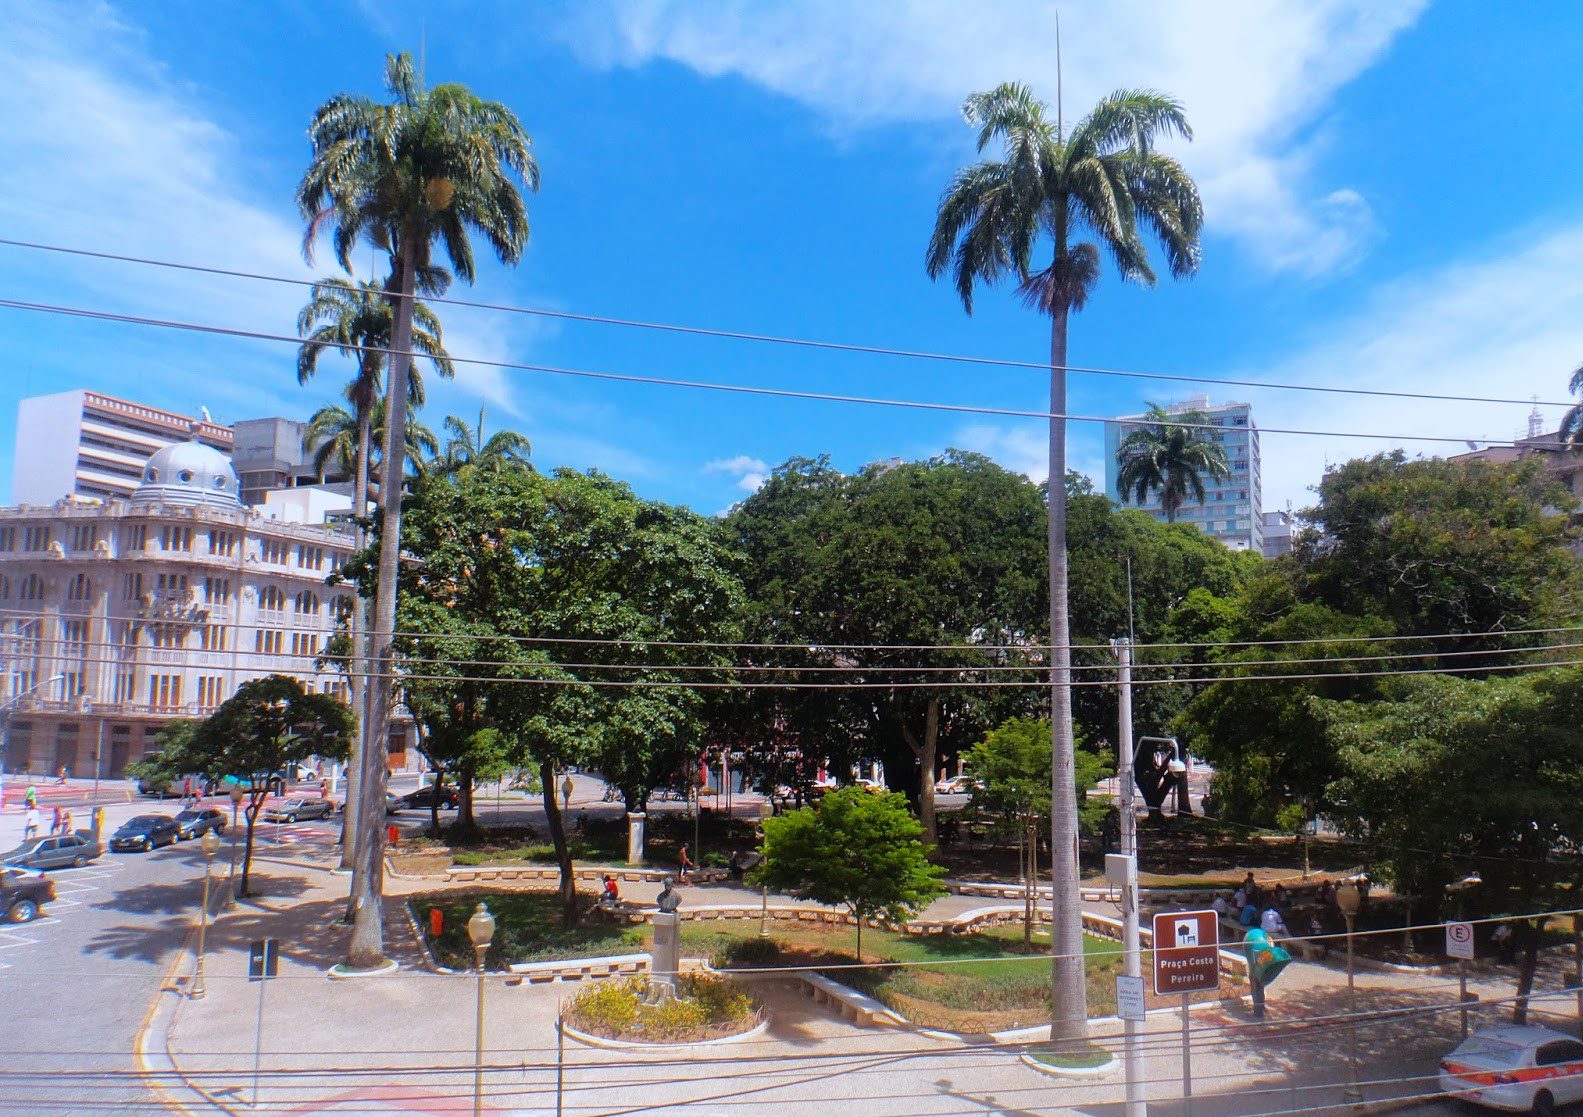 As históricas palmeiras da praça Costa Pereira recebem tratamentos